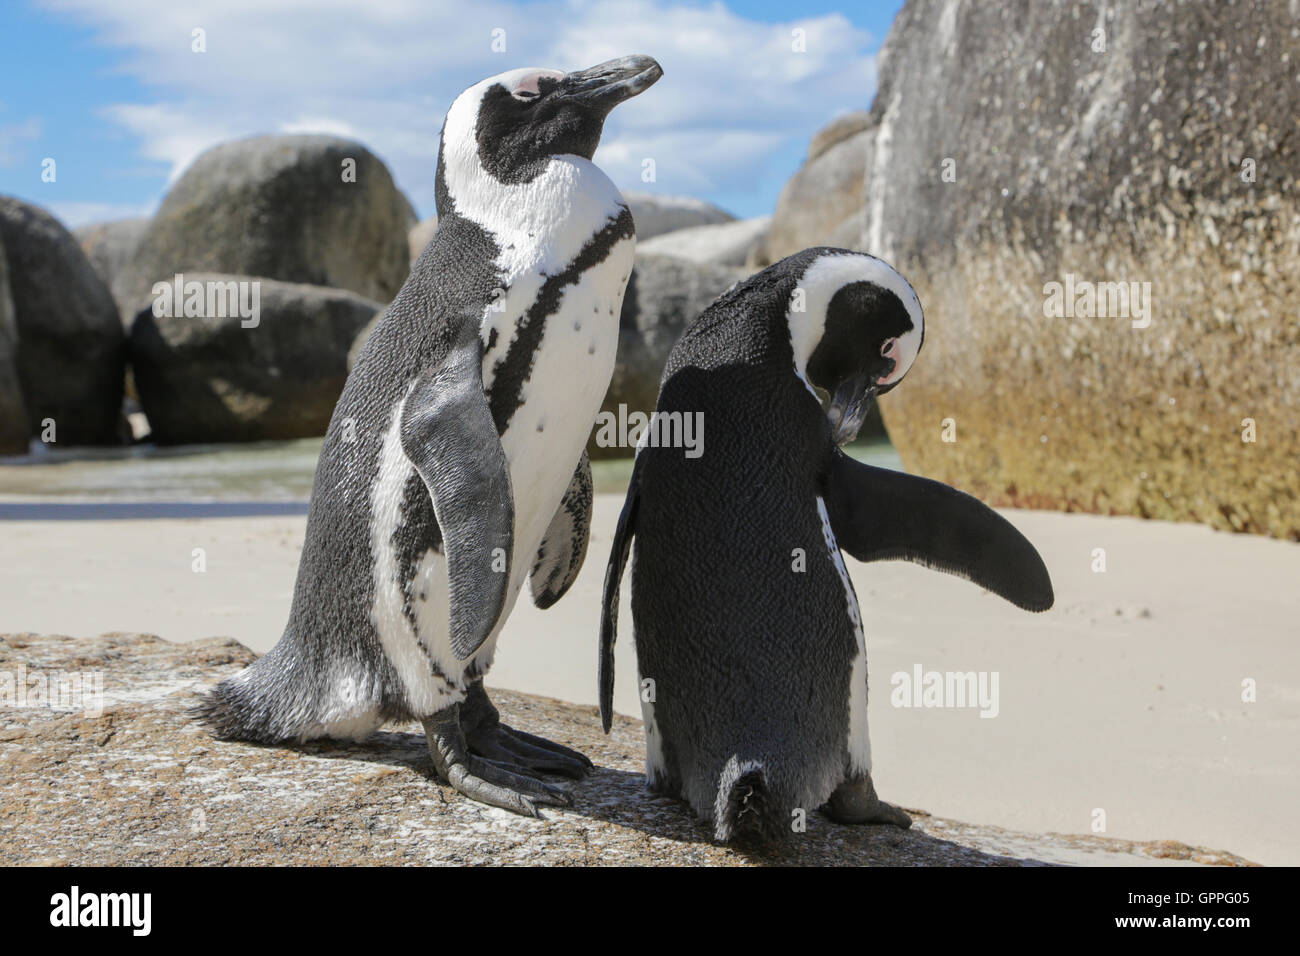 African Penguin (Spheniscus demersus) pair on beach Stock Photo